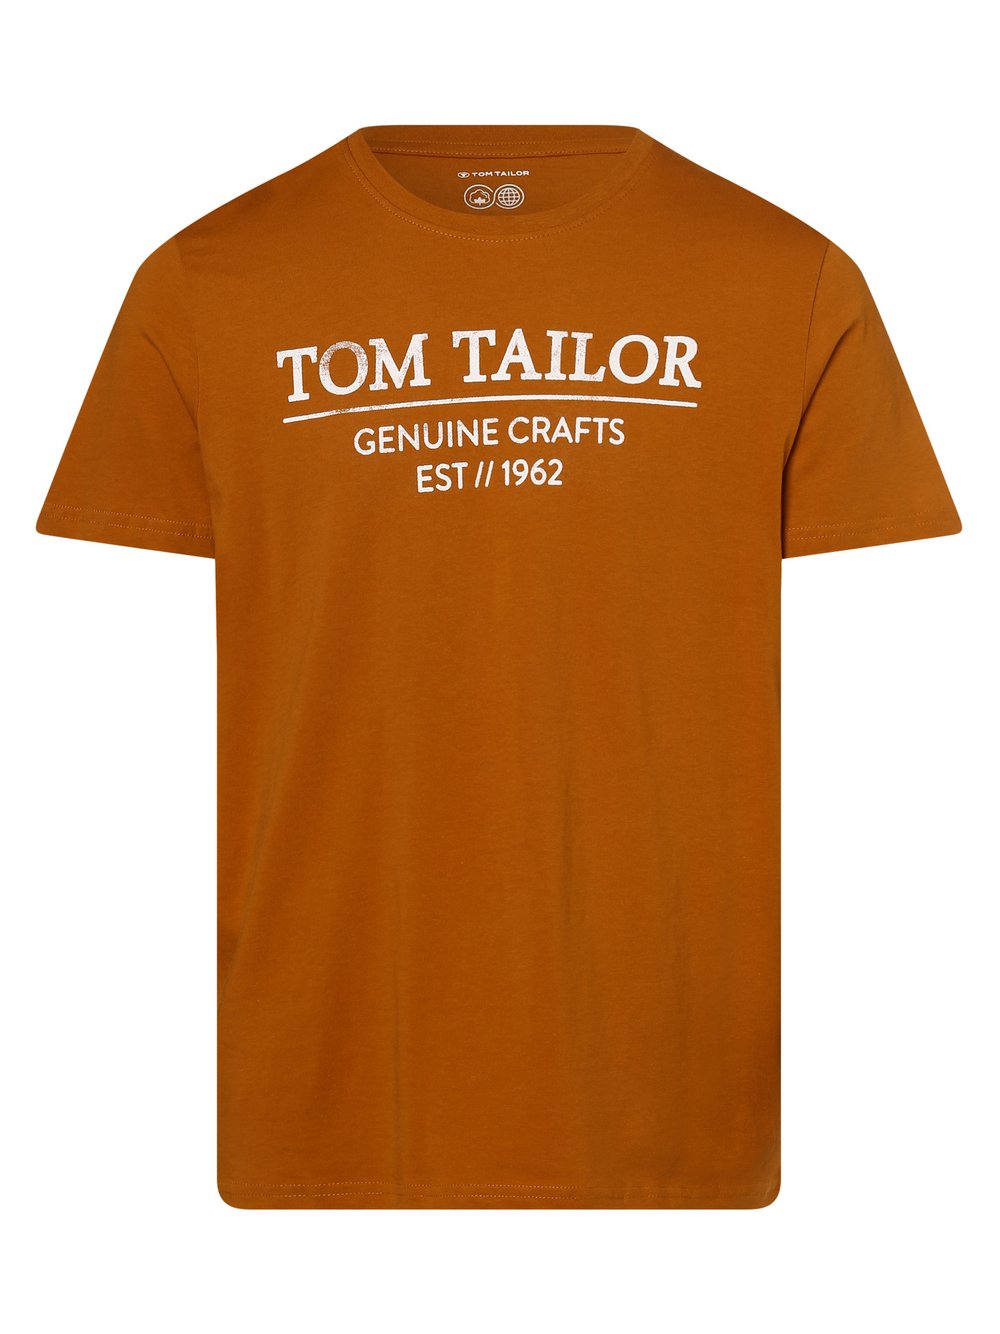 Tom Tailor - T-shirt męski, brązowy|pomarańczowy